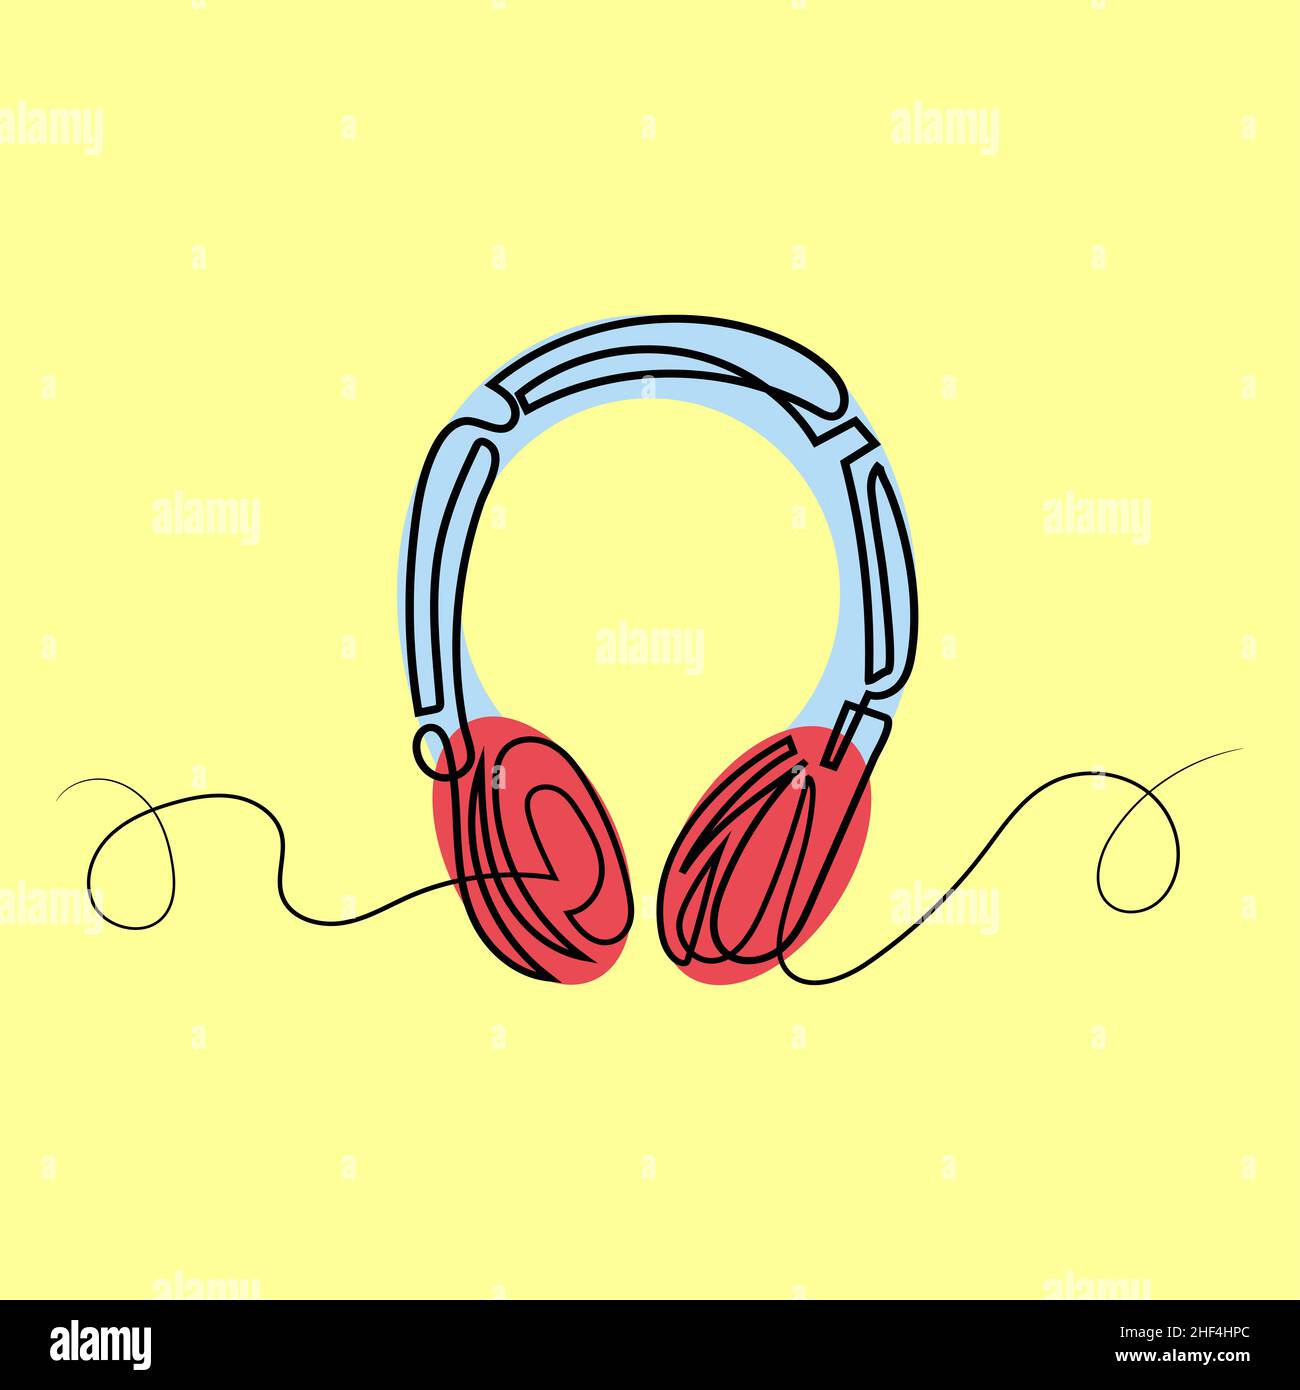 Ilustración de los auriculares. Auriculares de una línea de arte Foto de stock